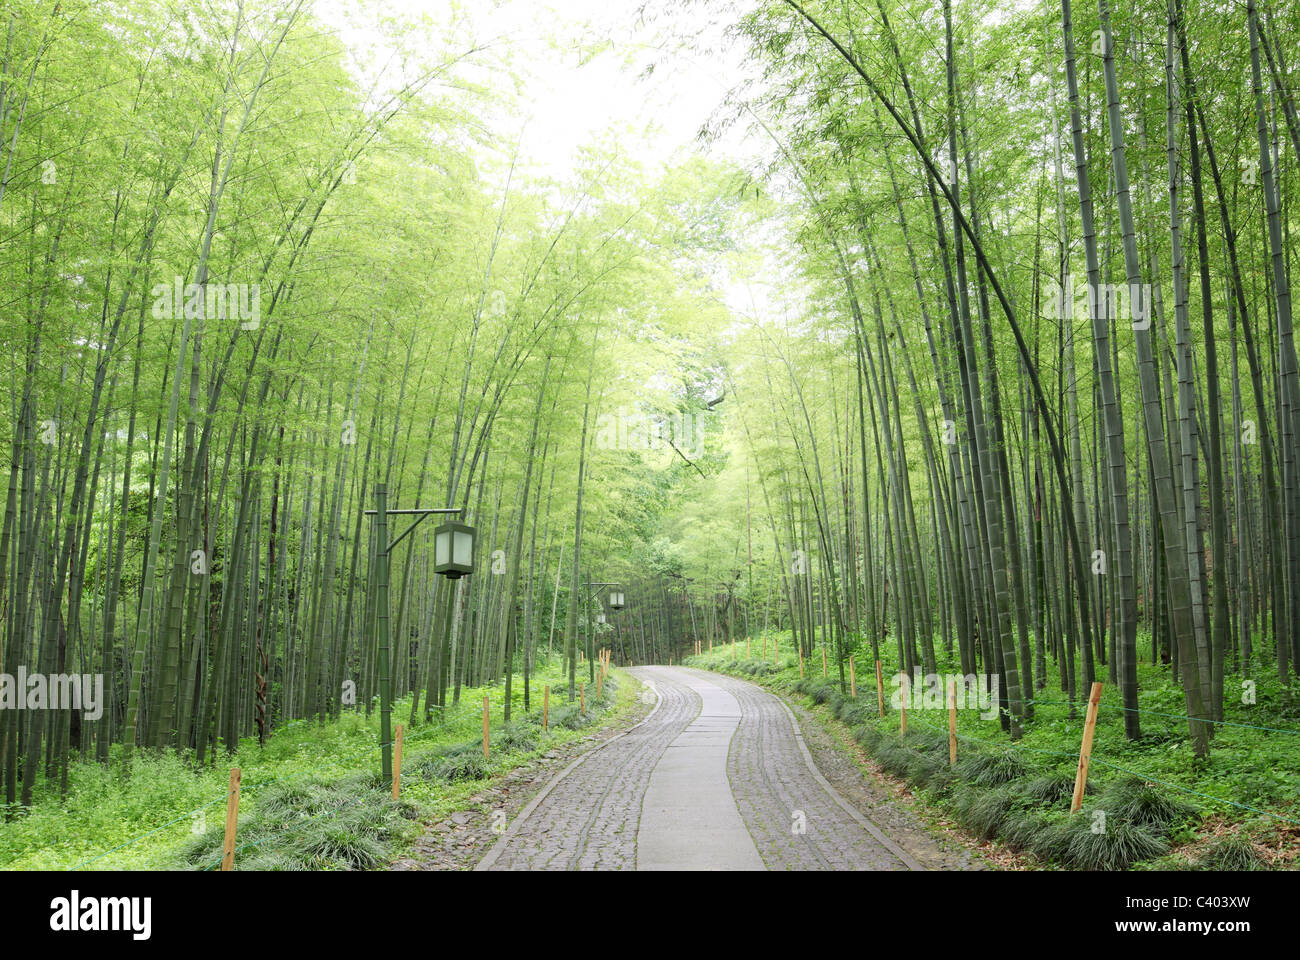 Verde foresta di bamboo -- un sentiero conduce attraverso un rigoglioso bosco di bambù Foto Stock